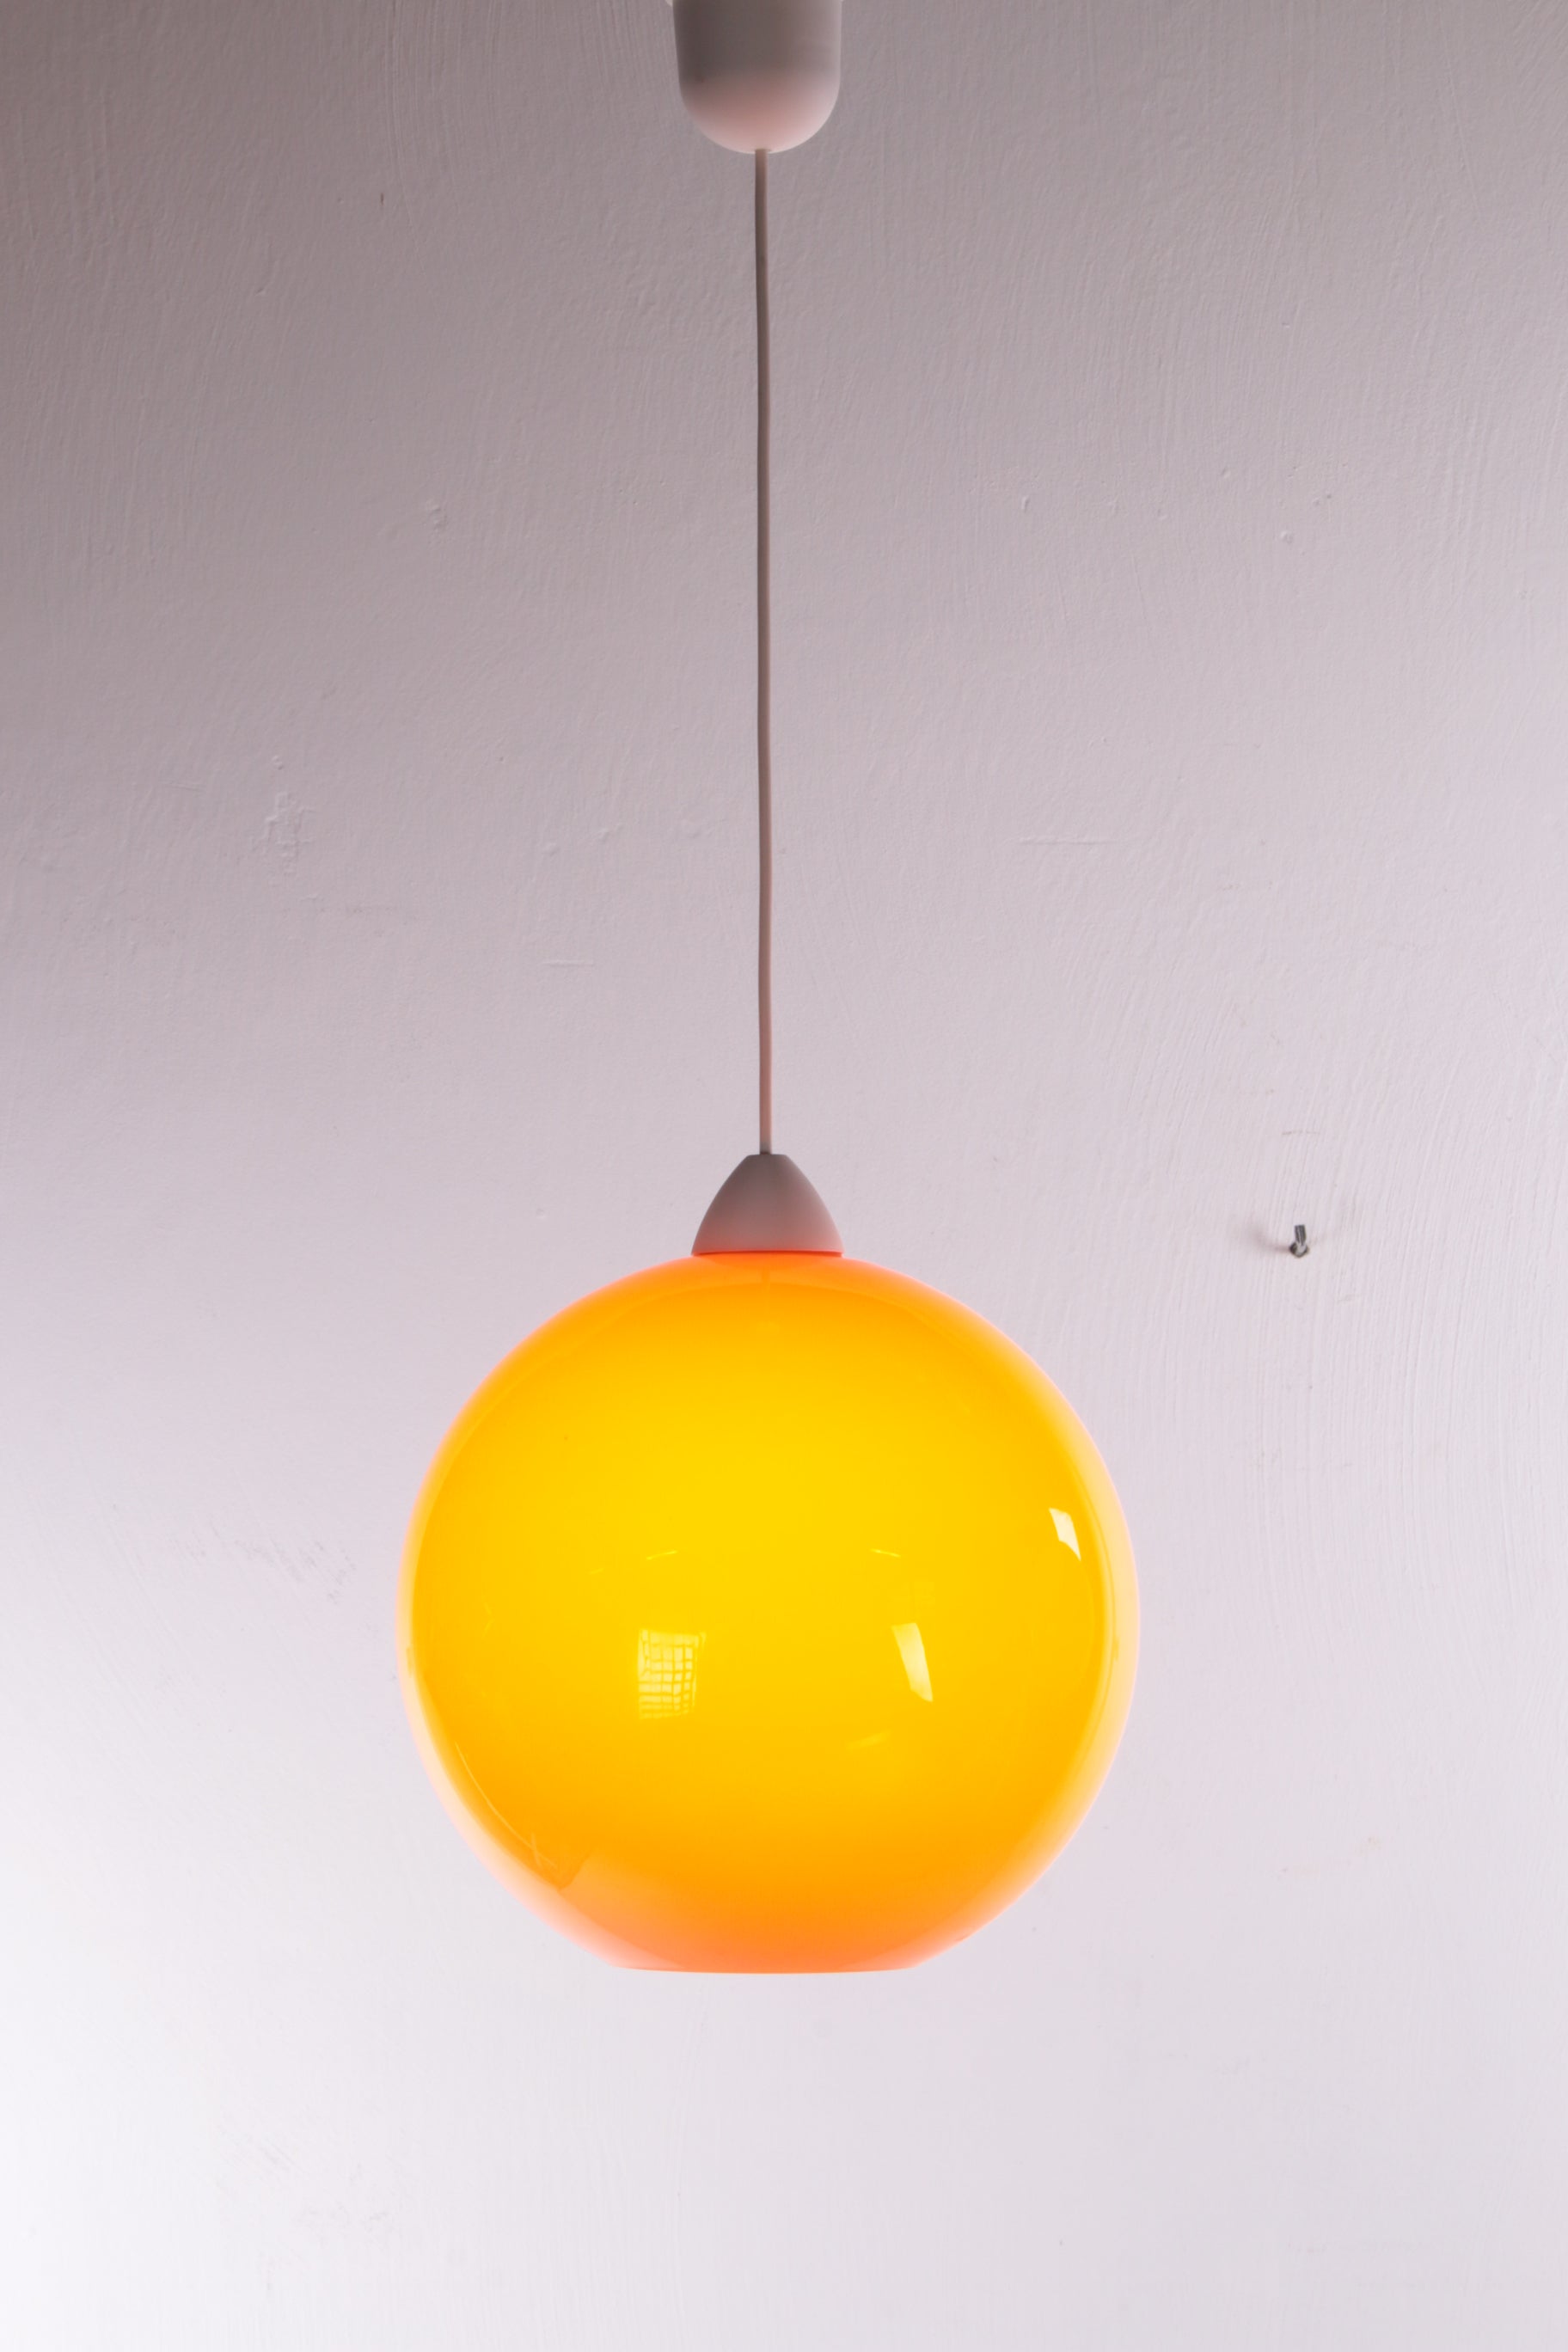 Hanglamp Model ui van Vistosi ontwerp van Alessandro Pianon 1960s voorkant licht aan